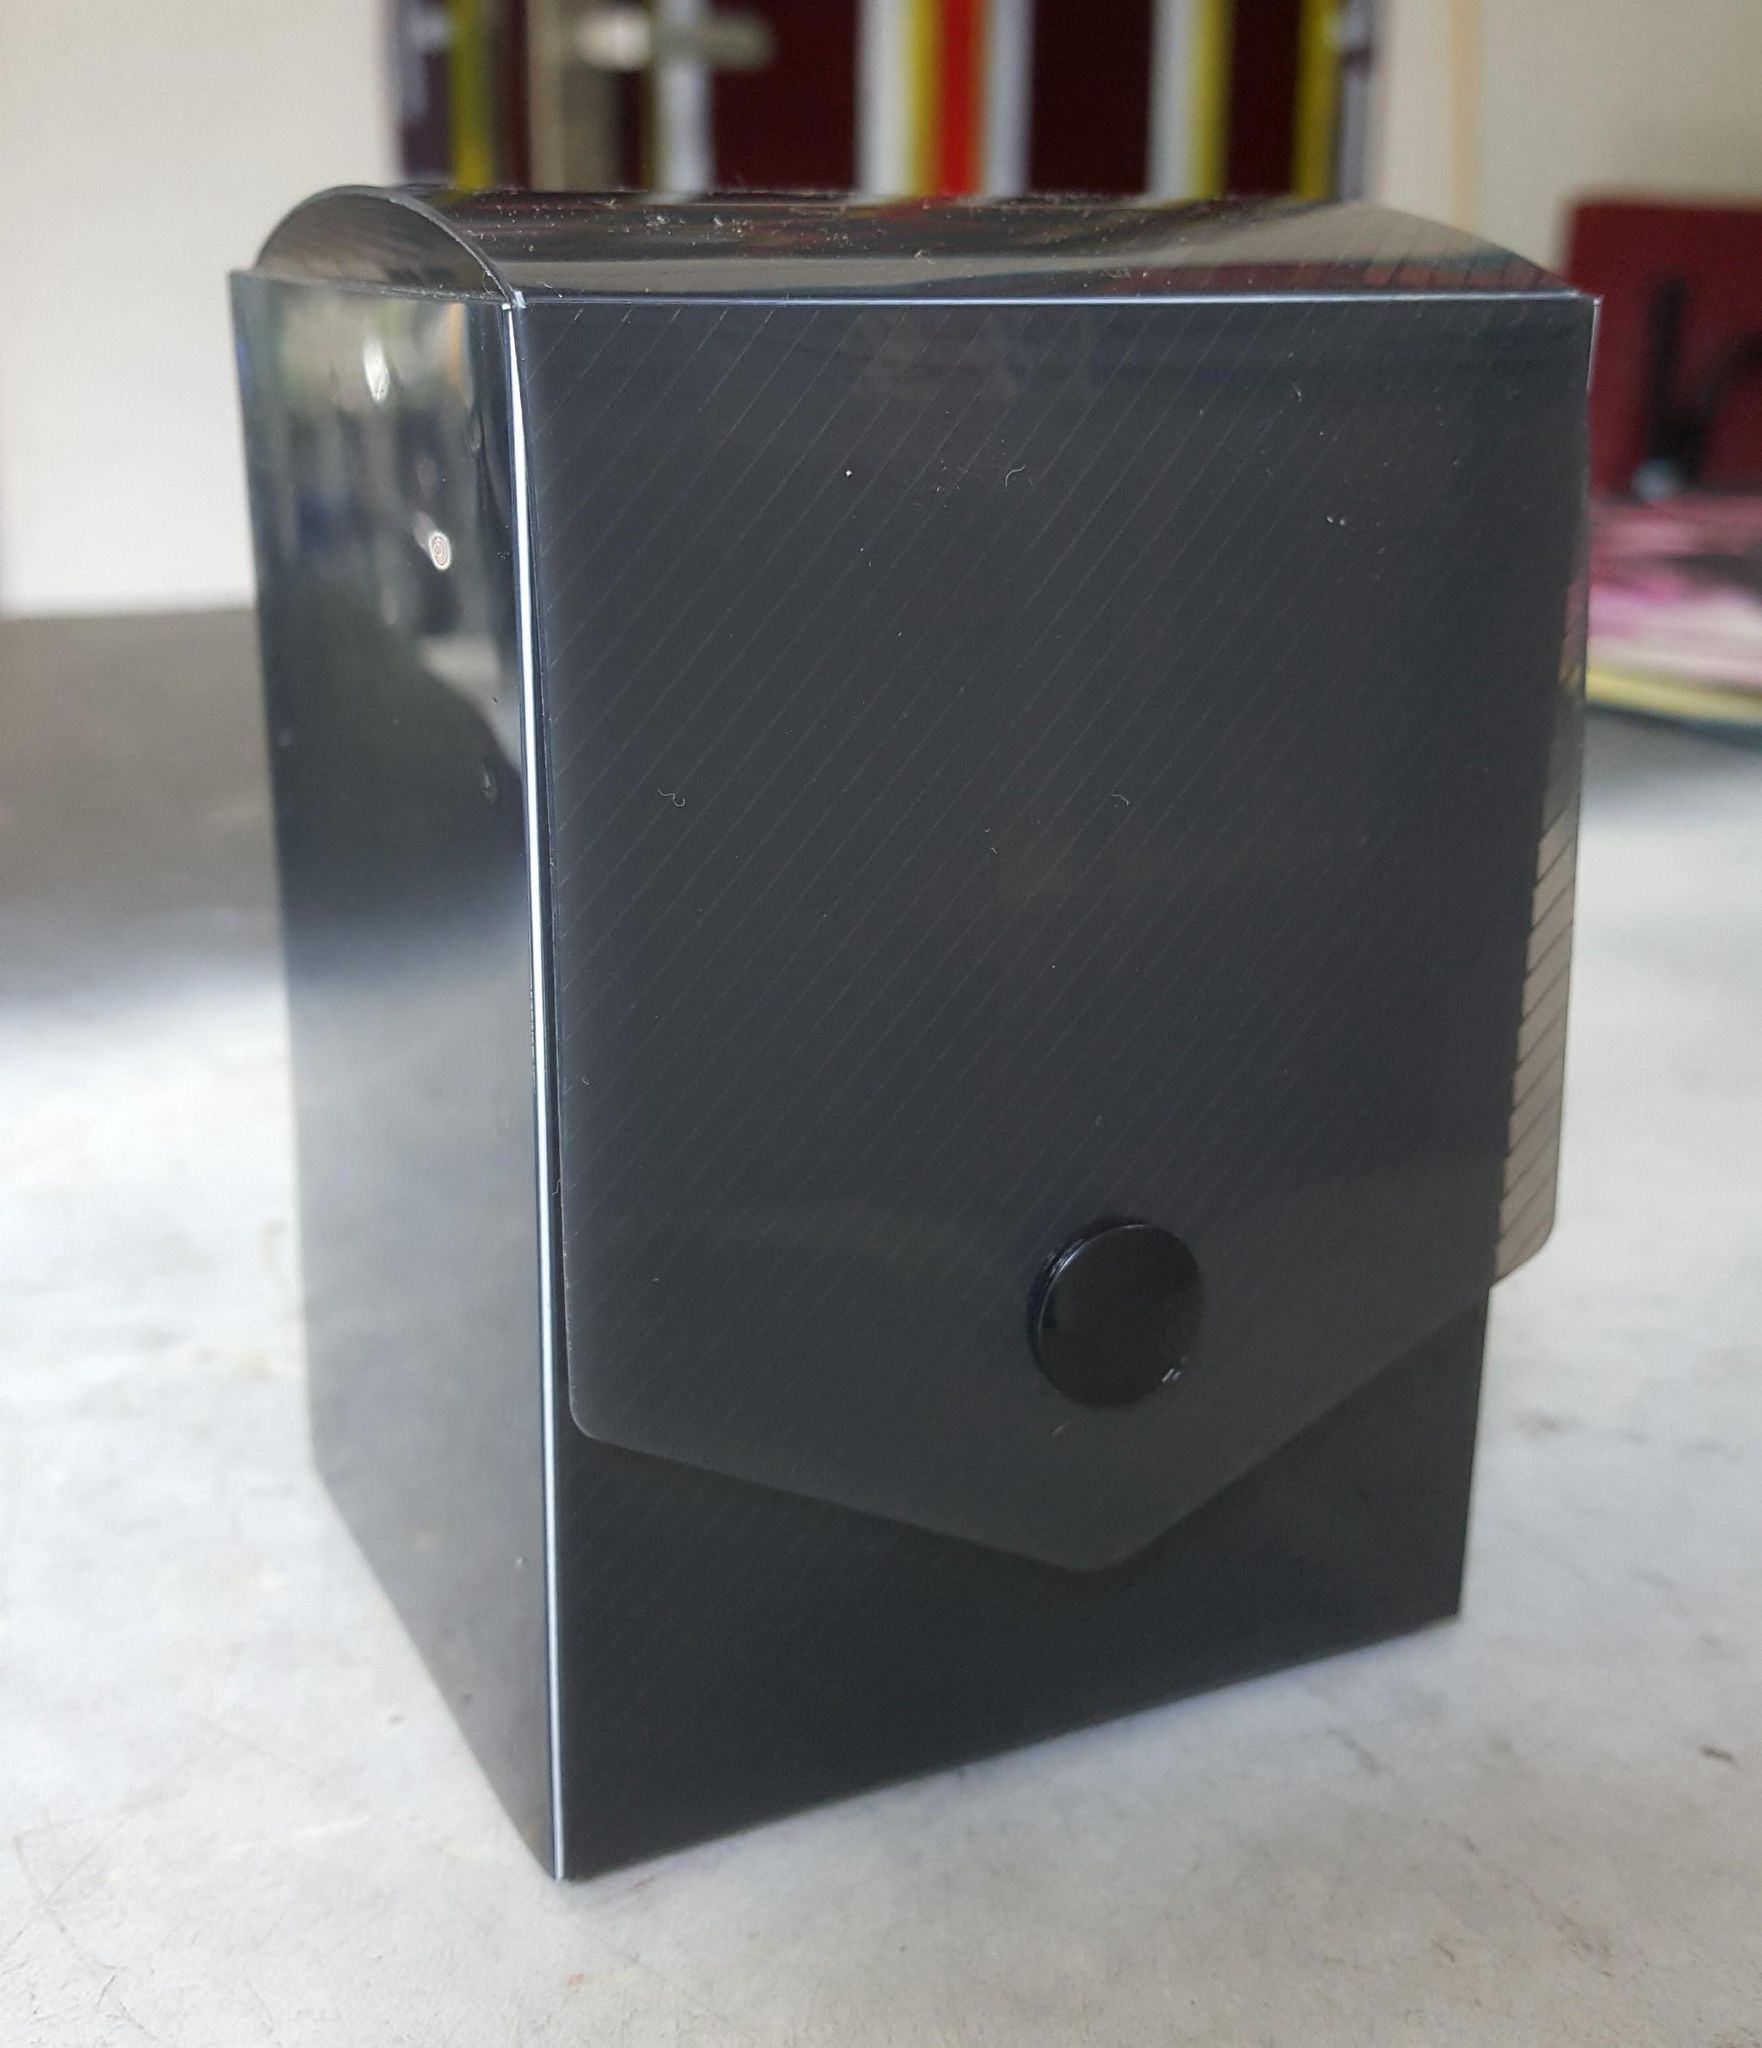 Deck box KMC mini black - hộp đựng bài màu đen cỡ nhỏ.